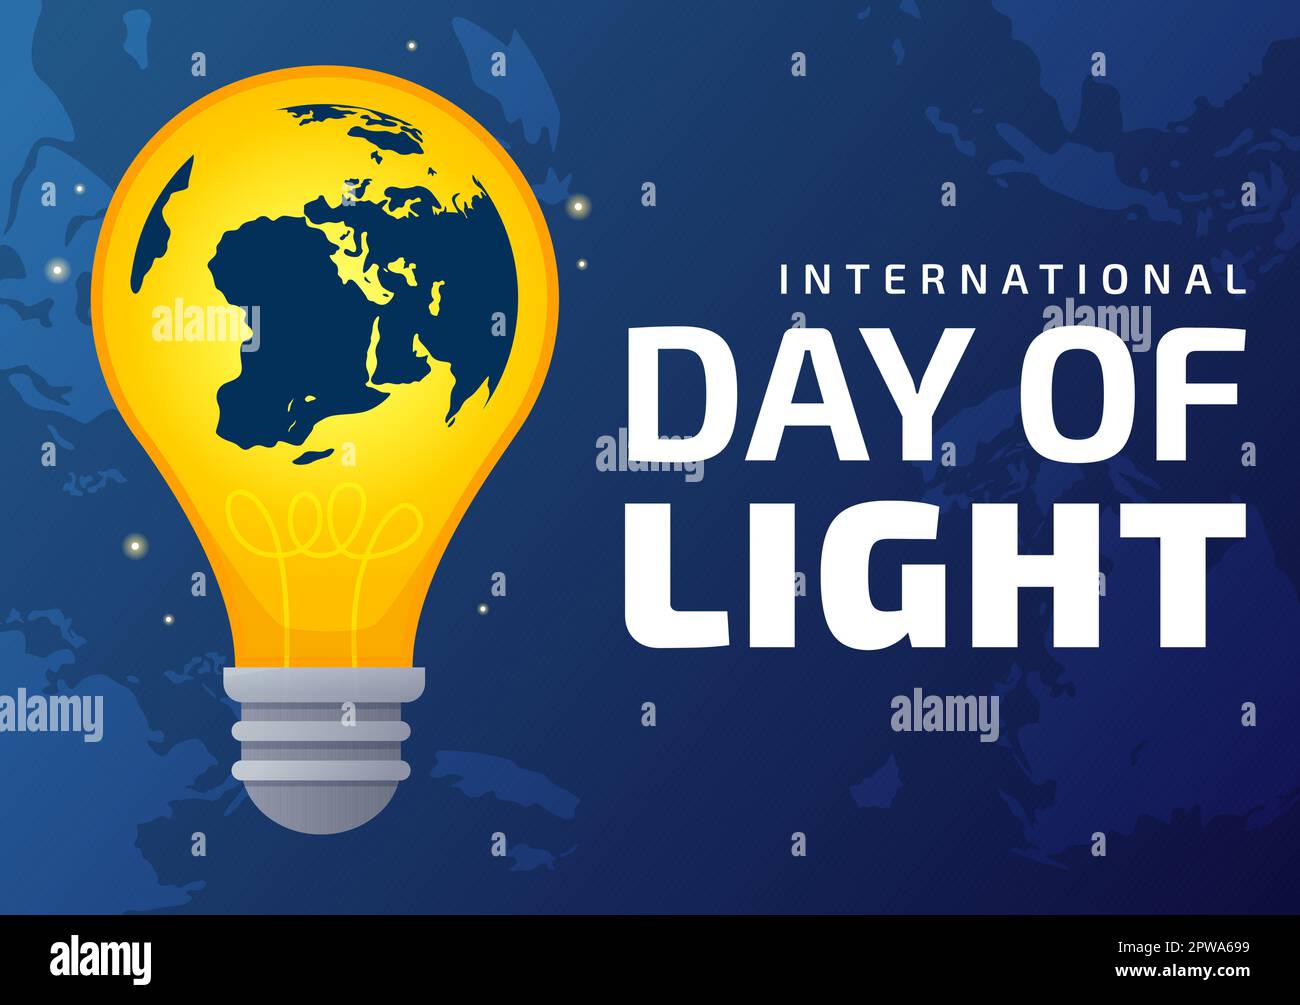 Internationaler Tag des Lichts am 16. Mai Illustration zur Bedeutung der Verwendung von Lampen in flachen Cartoons handgezeichnet für Banner- oder Landing-Page-Vorlagen Stock Vektor